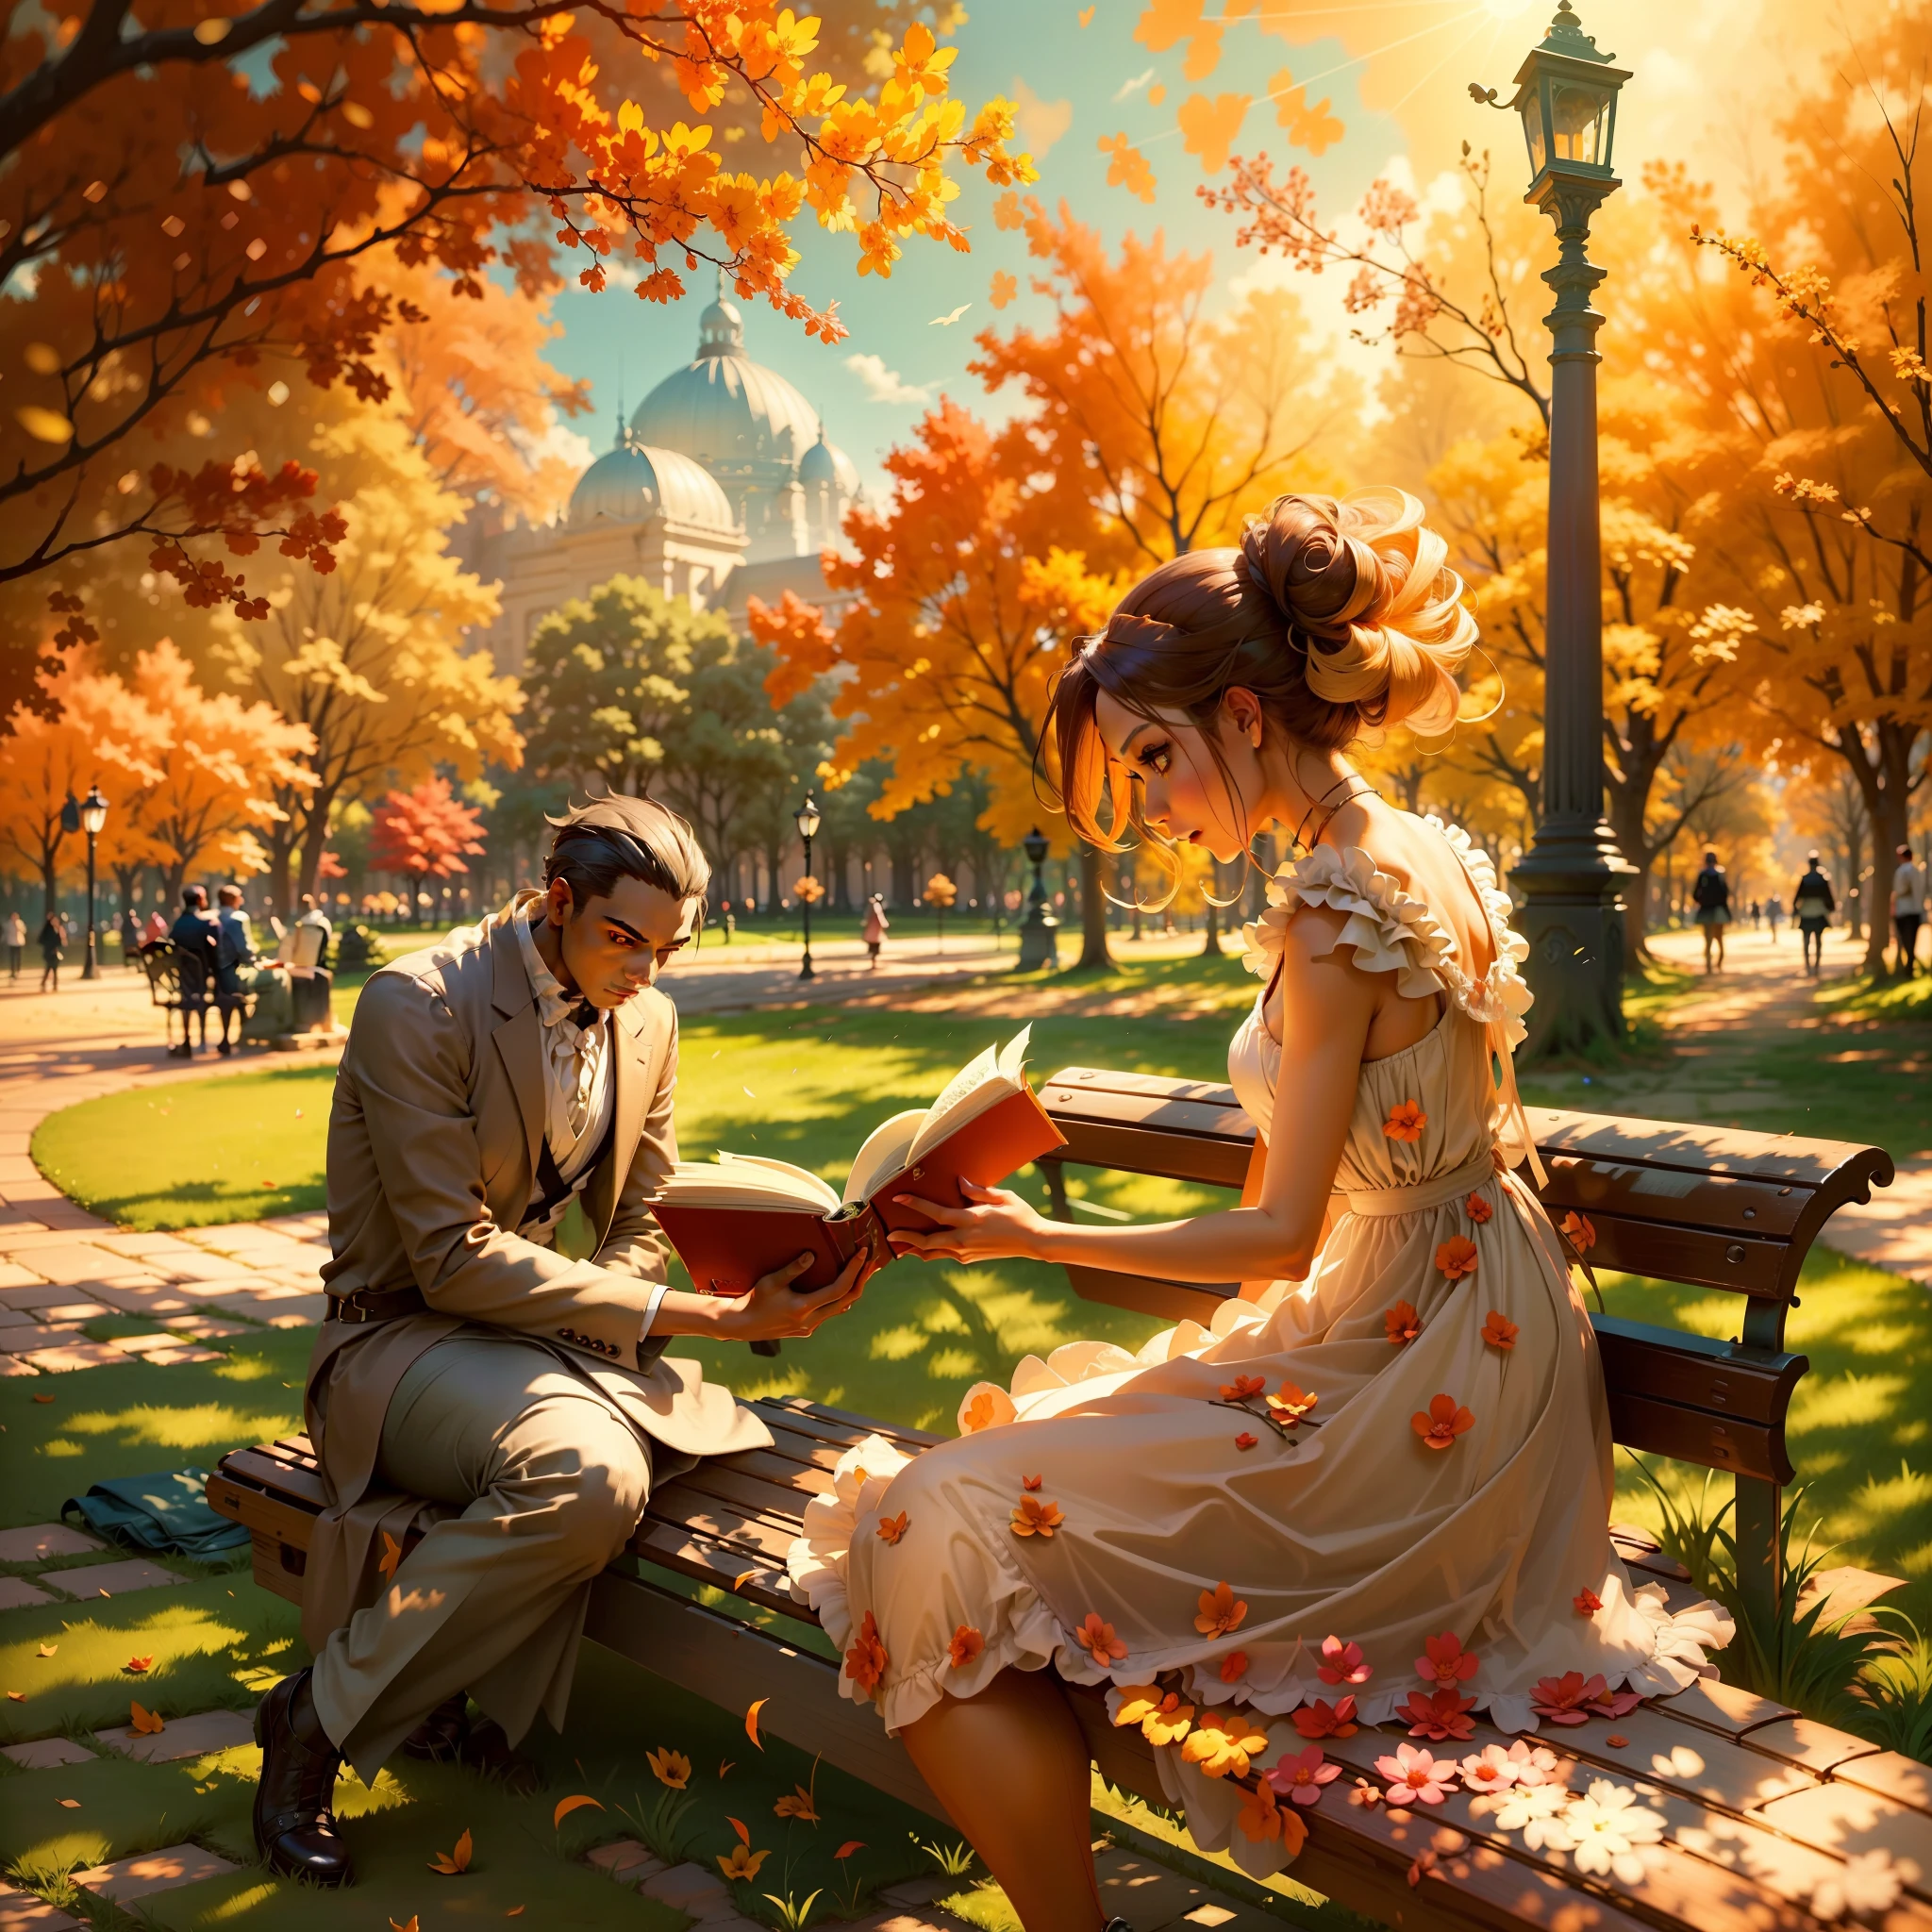 晴れた日の午後に女性が公園を歩いている場面を想像してください. 彼女は美しさを引き立てるエレガントなドレスを着ている, そして彼女の好奇心旺盛な目はベンチに座っている男性に釘付けになった, 本に完全に没頭する. 背景の太陽の光によって作り出された活気に満ちた雰囲気を説明します.